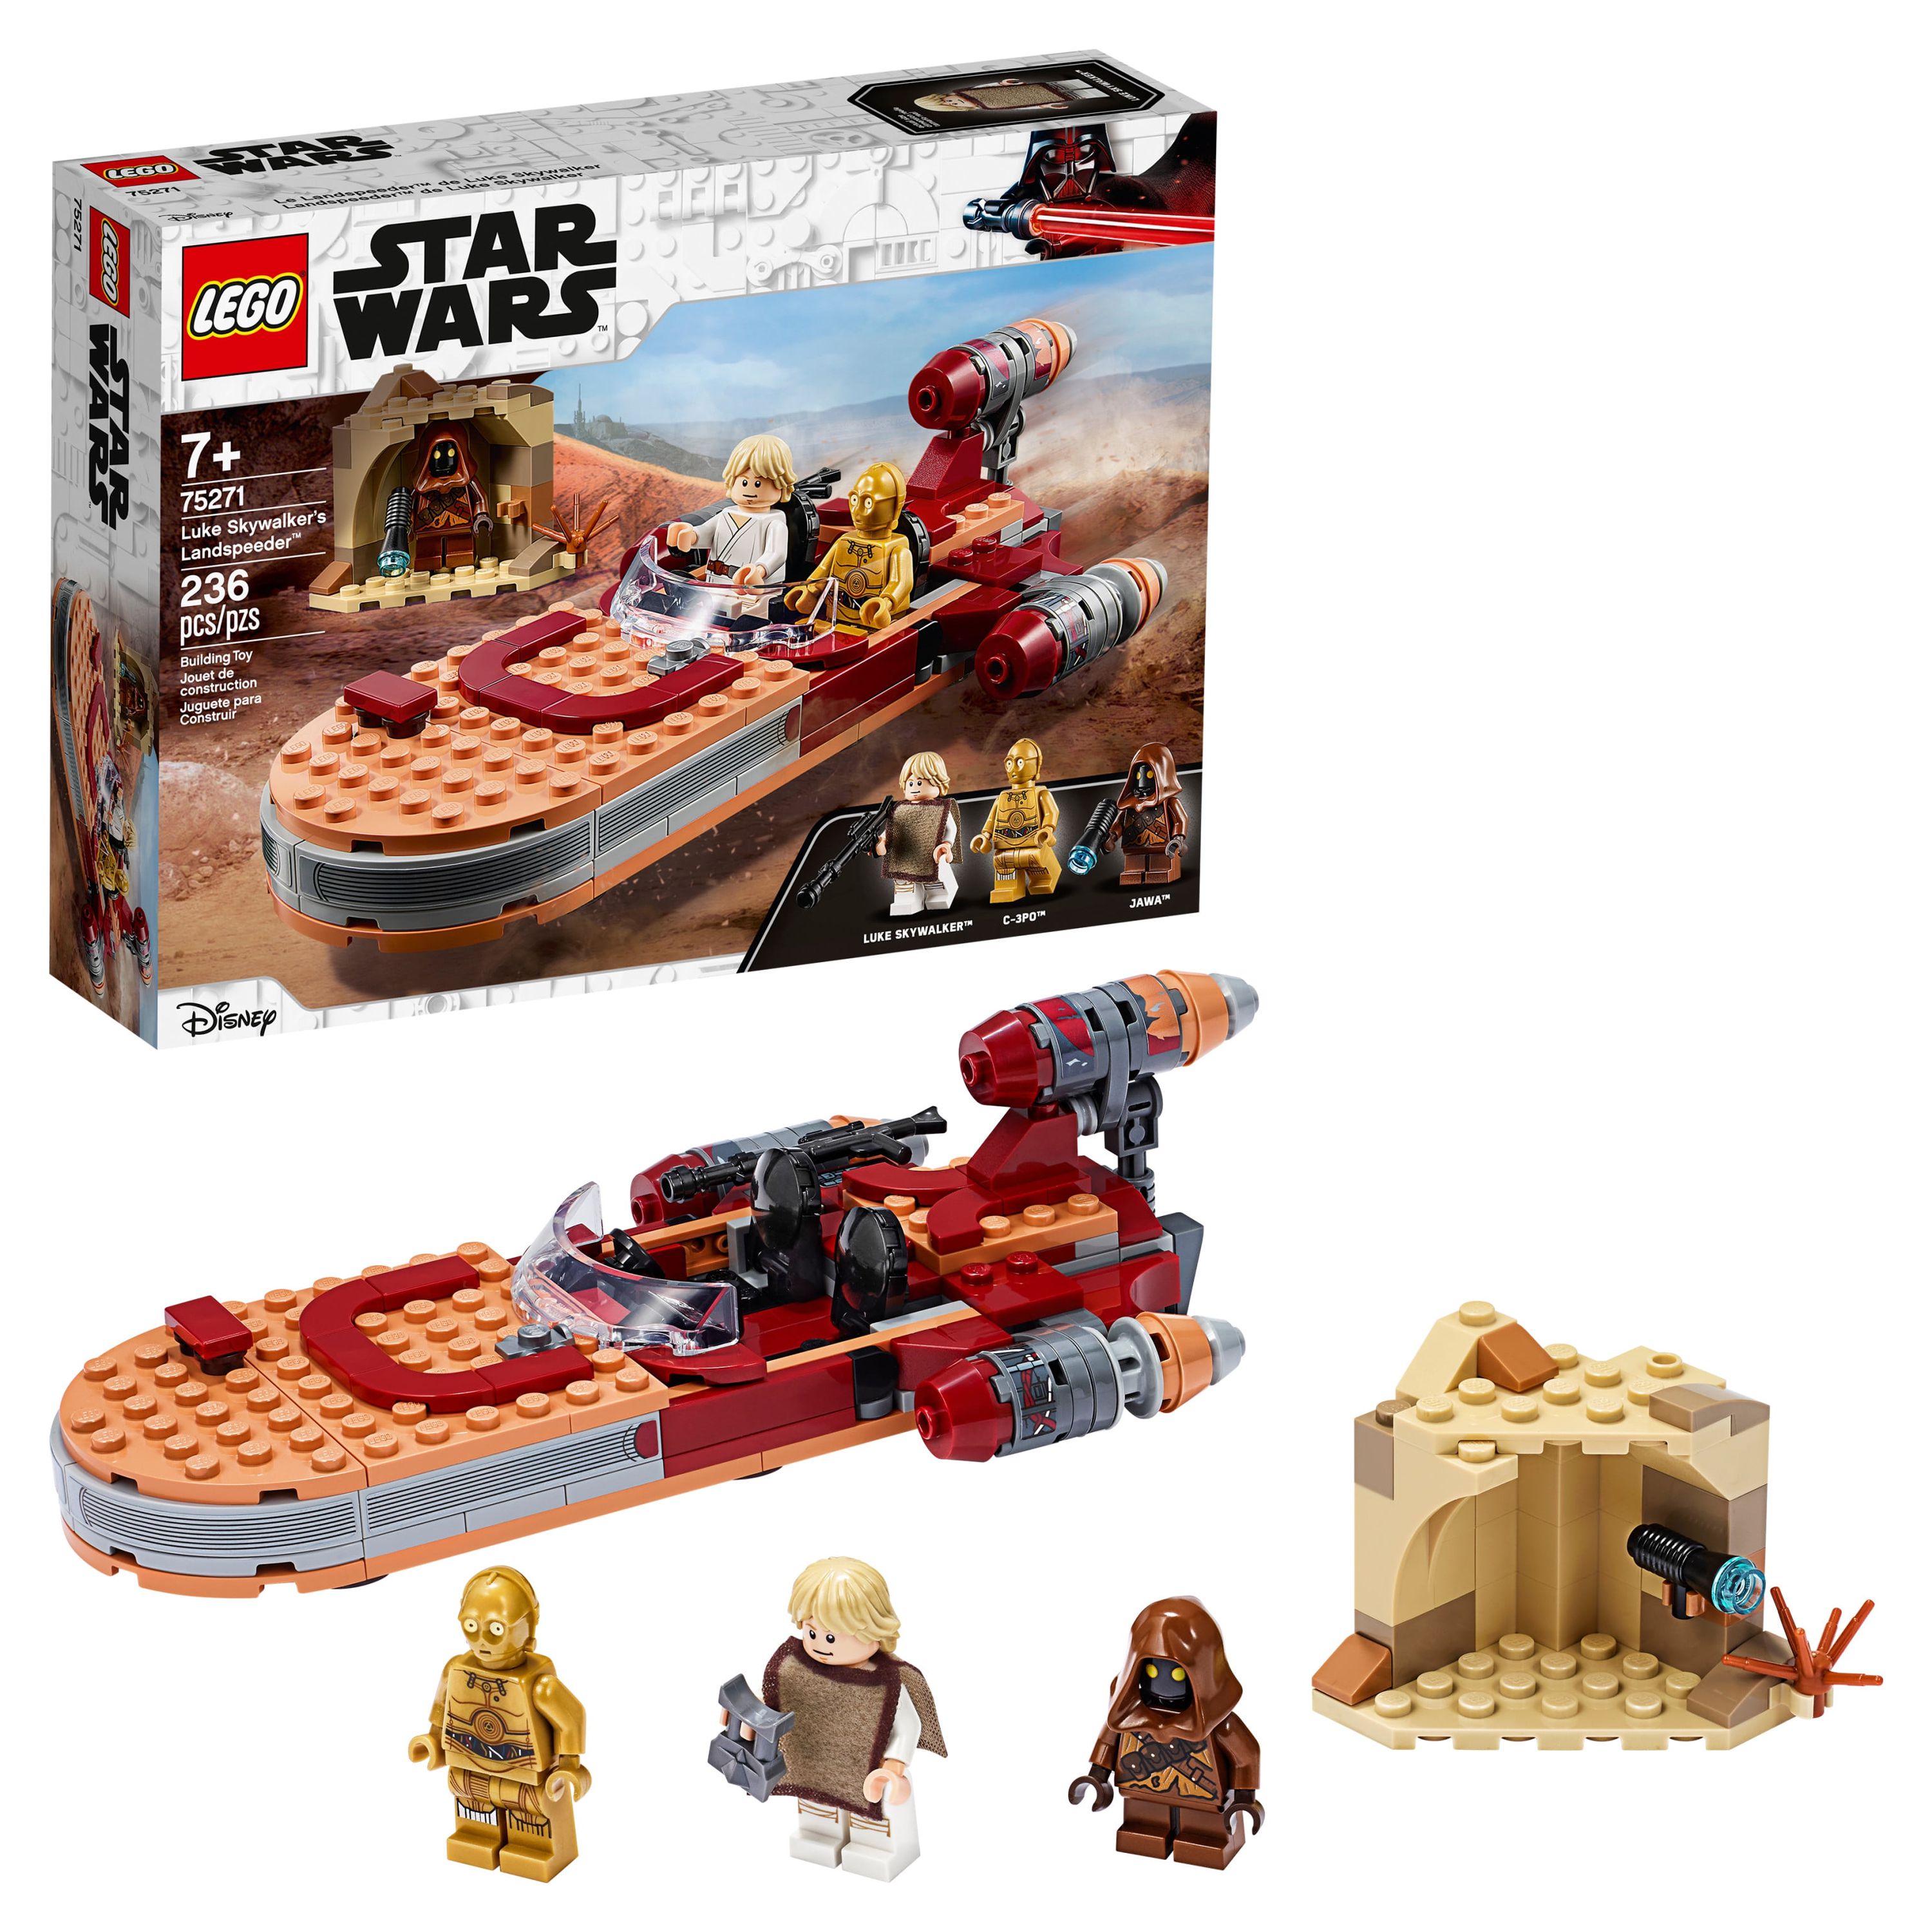 LEGO Star Wars: A New Hope Luke Skywalker’s Landspeeder 75271 Building Kit, Collectible Set (236 Pieces) - image 1 of 5